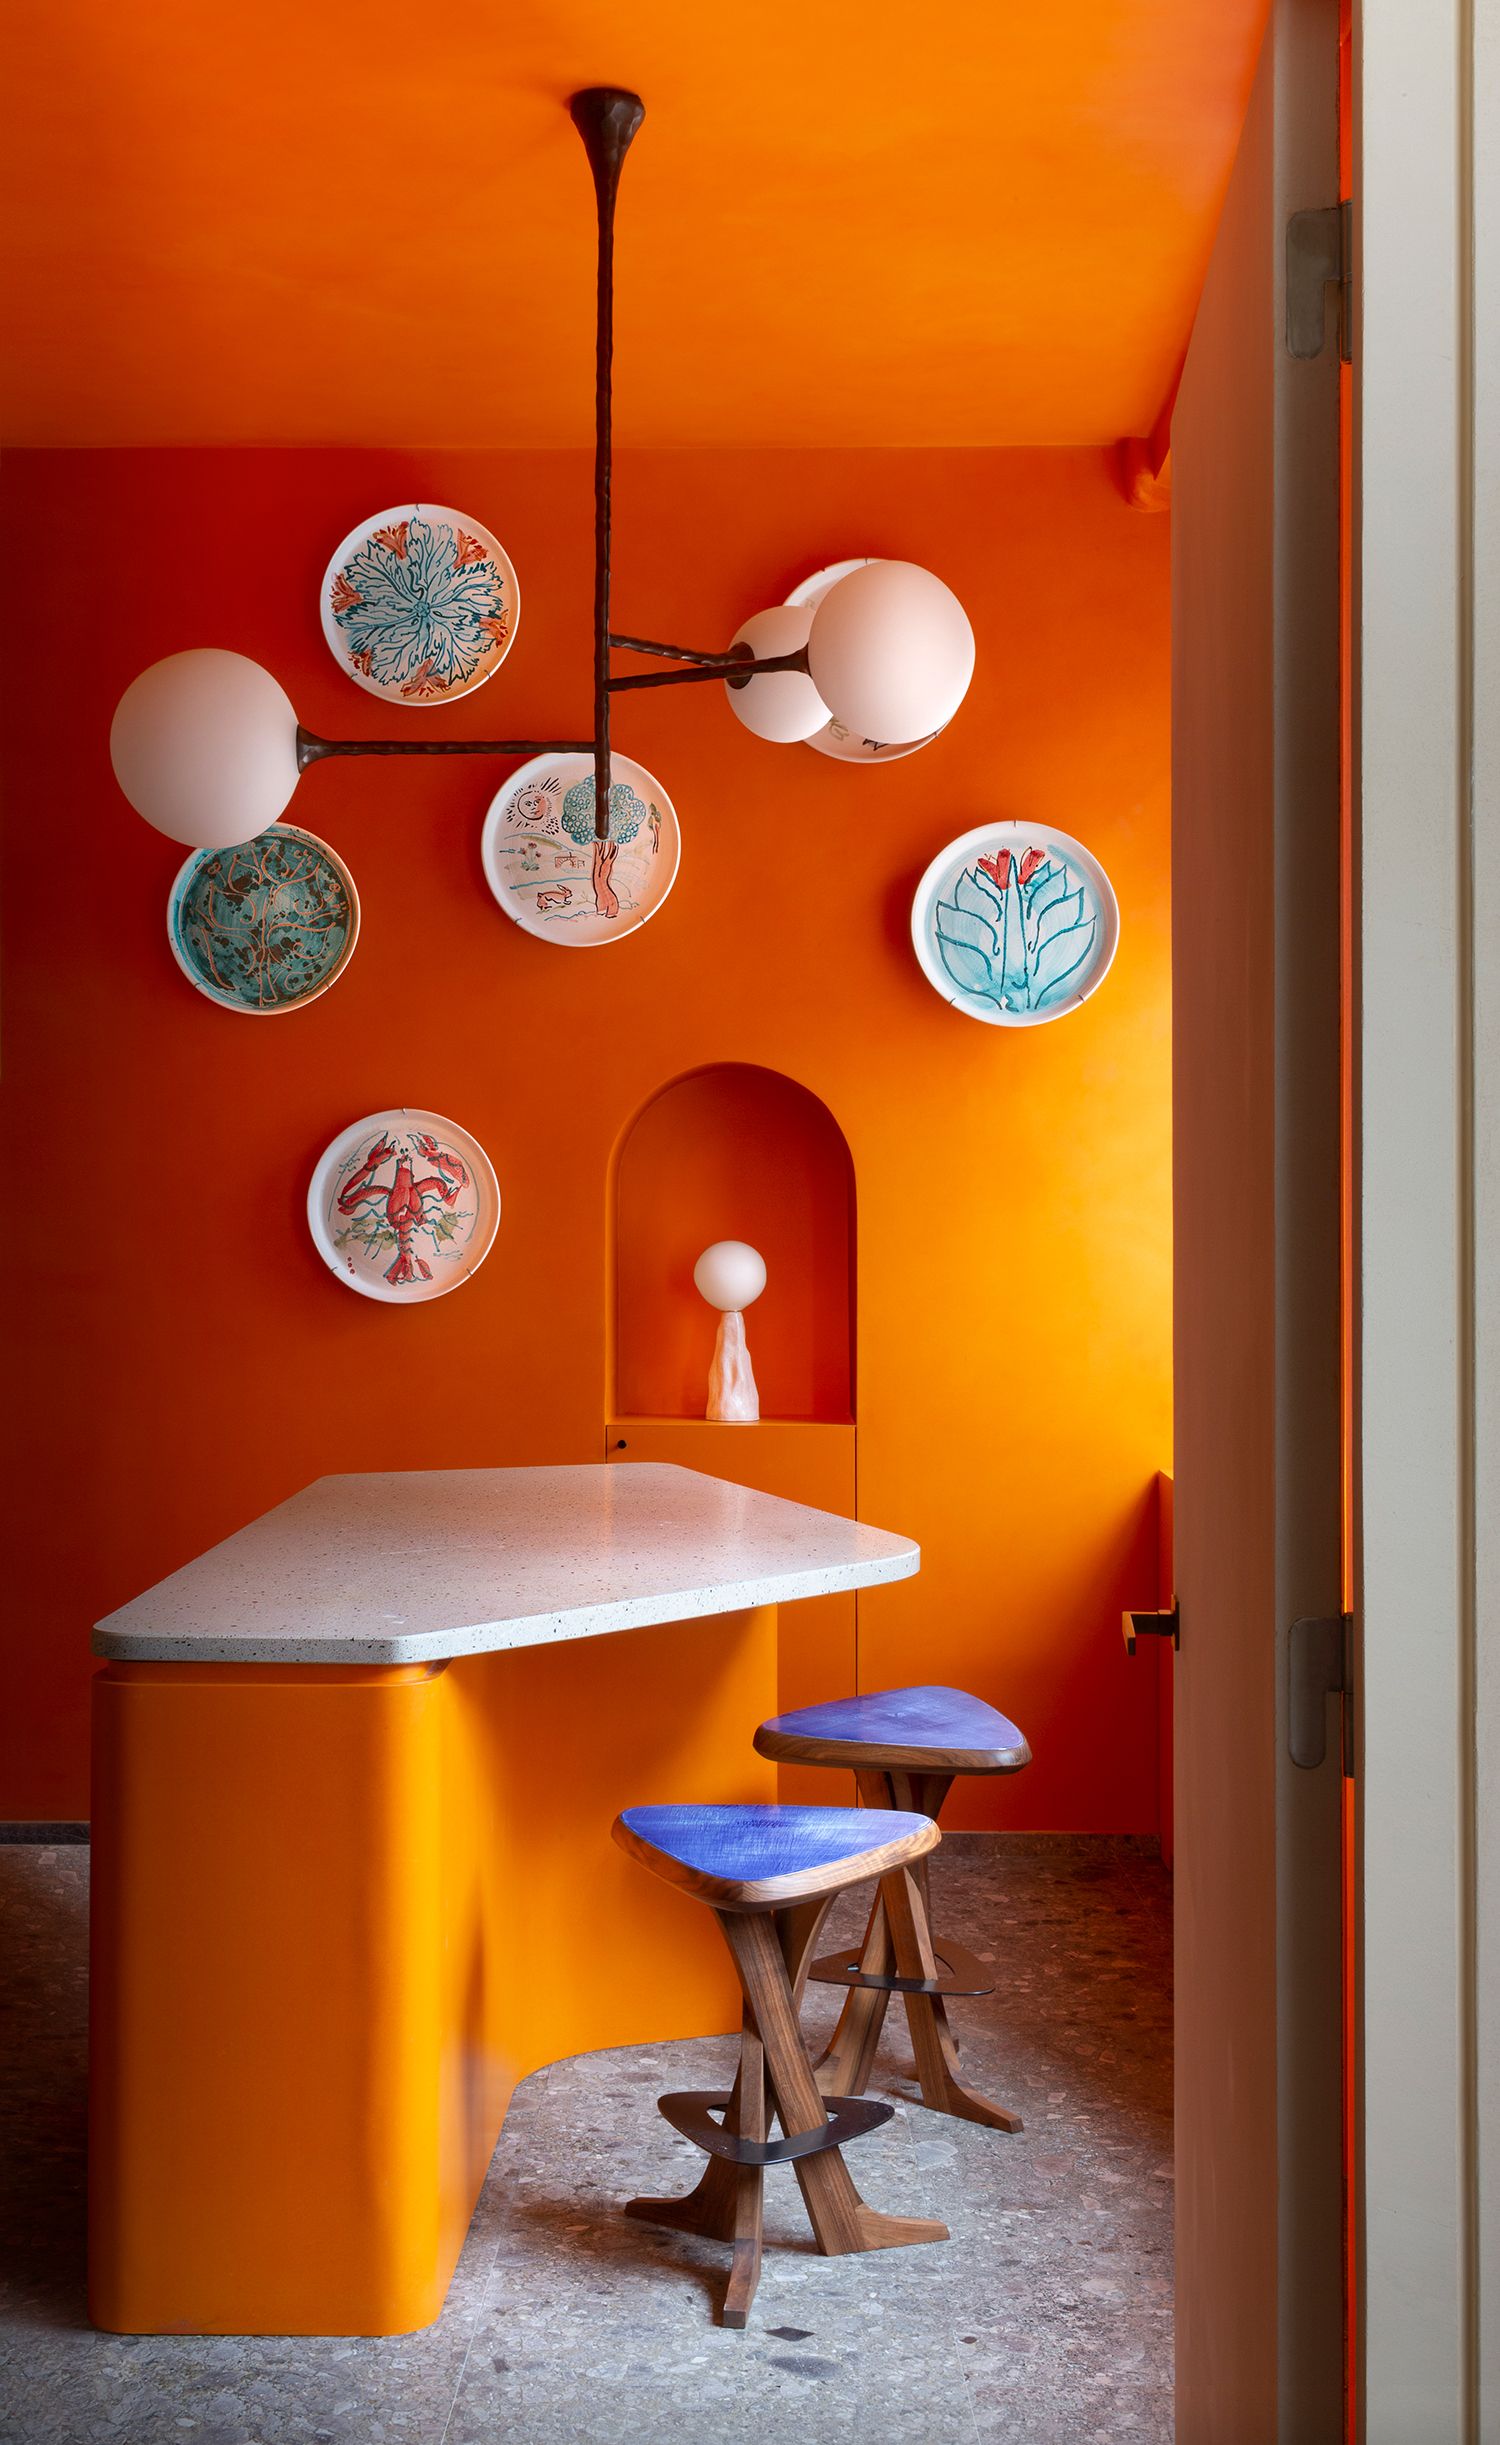 Orange Colour Block Fabric, Wallpaper and Home Decor